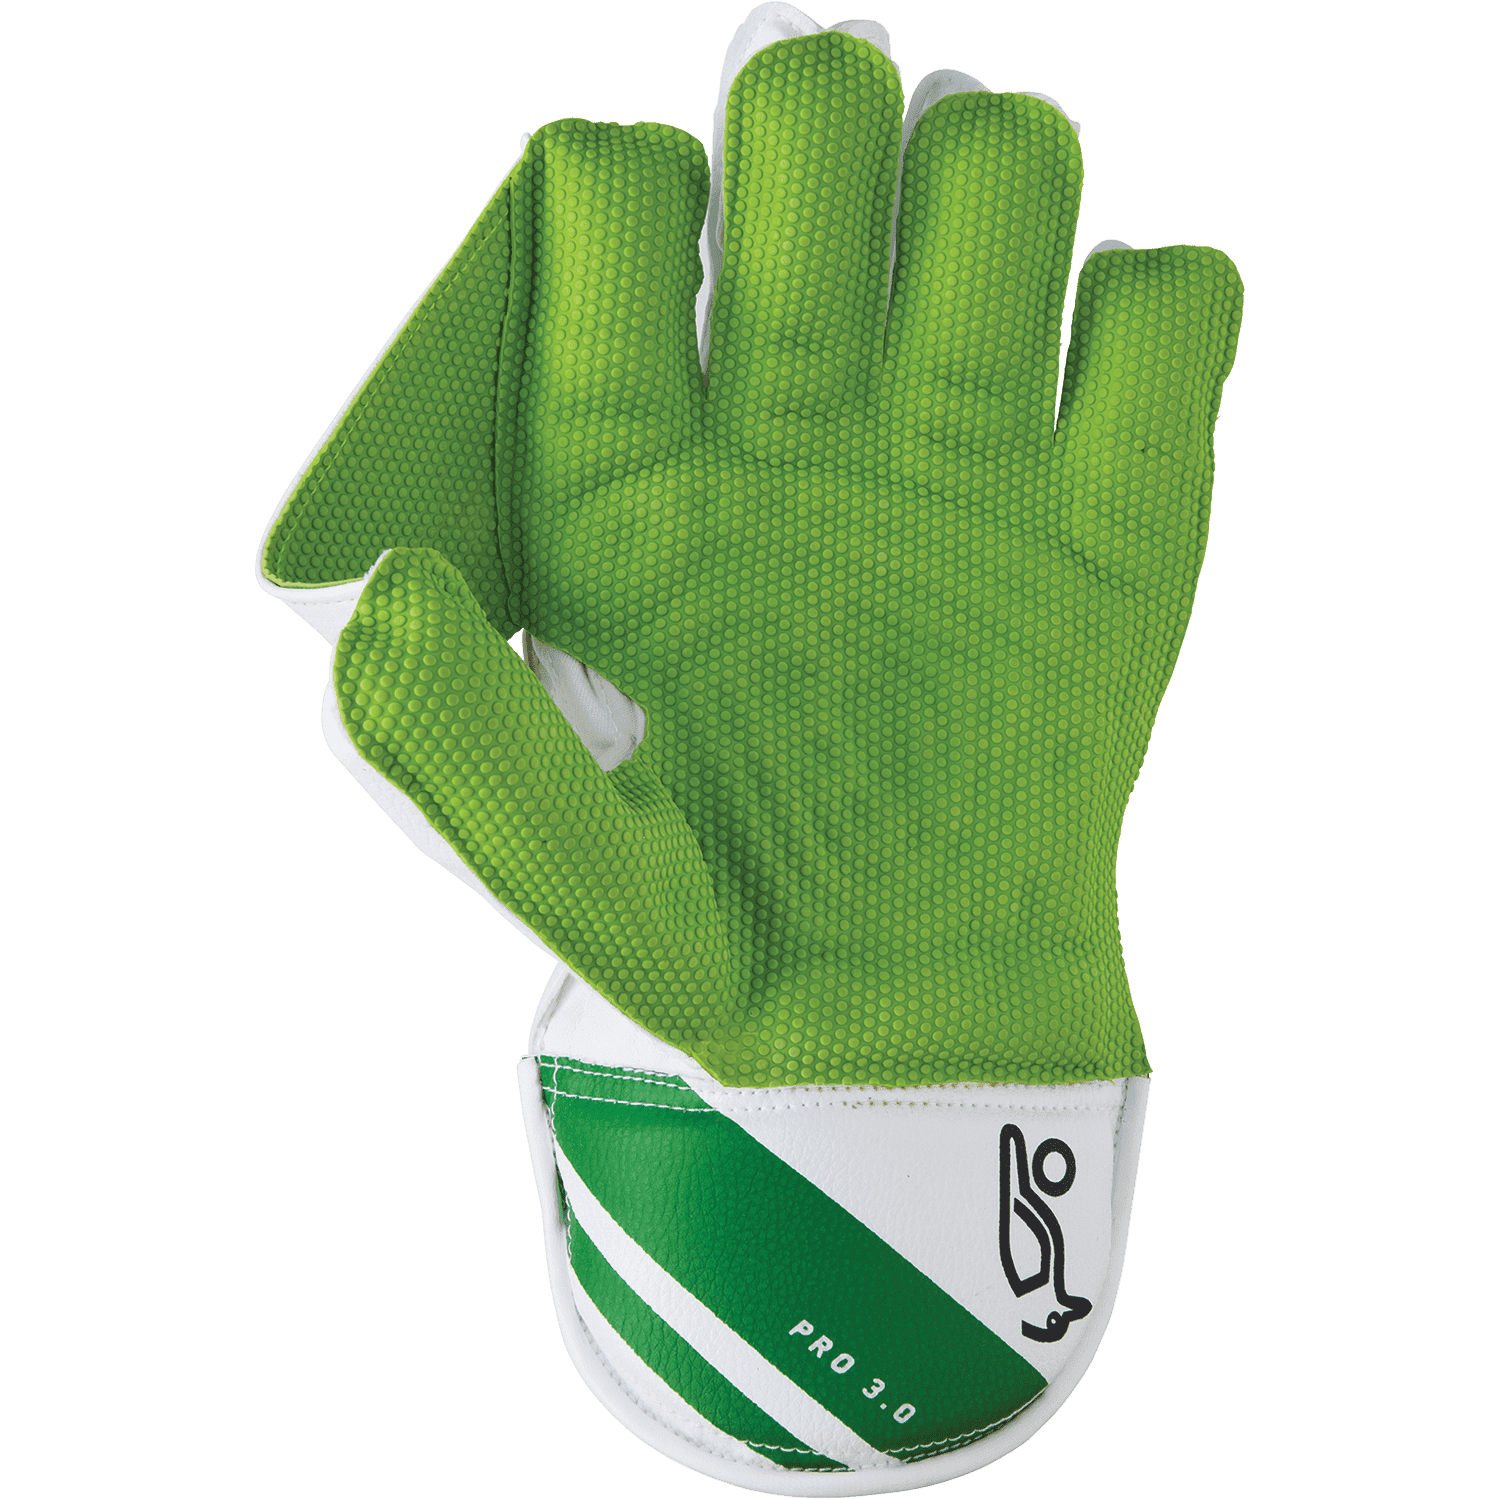 Kookaburra WicketKeeping Kookaburra Kahuna Pro 3.0 Cricket Wicketkeping Gloves